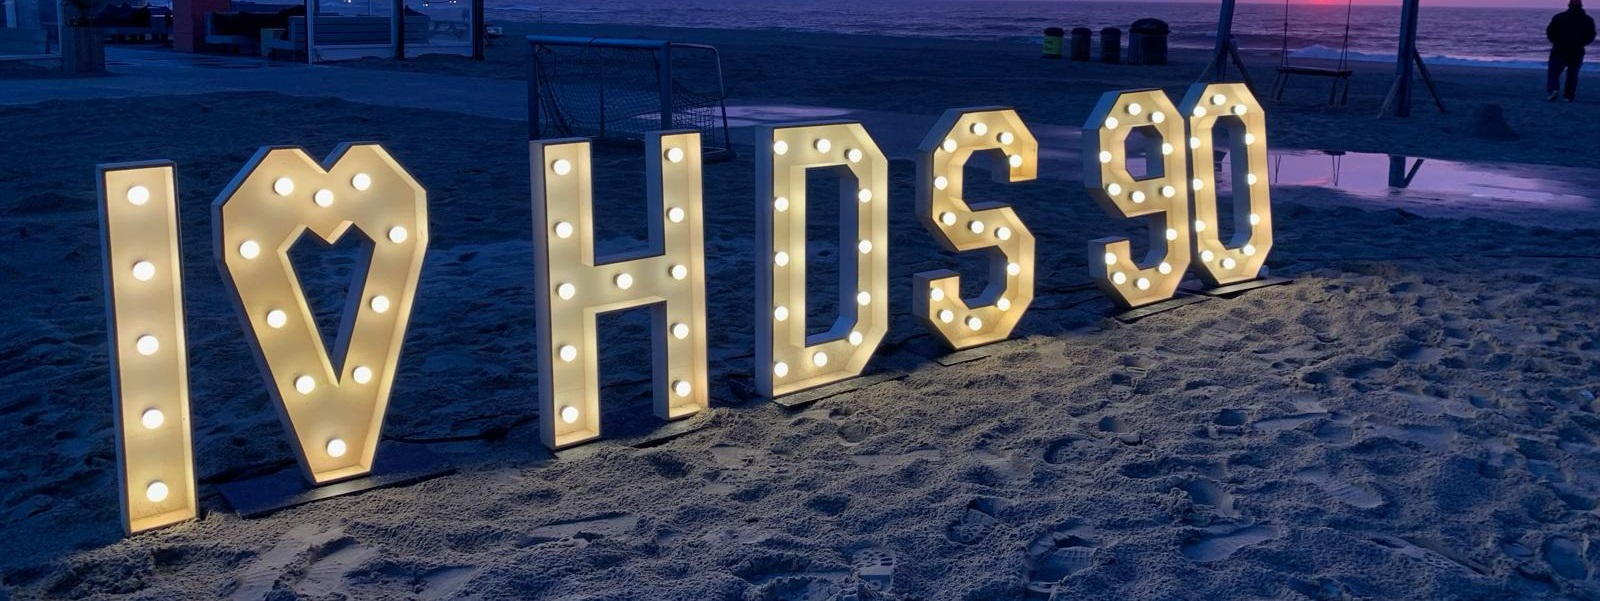 HDS 90 jaar strand lichtletters.jpg